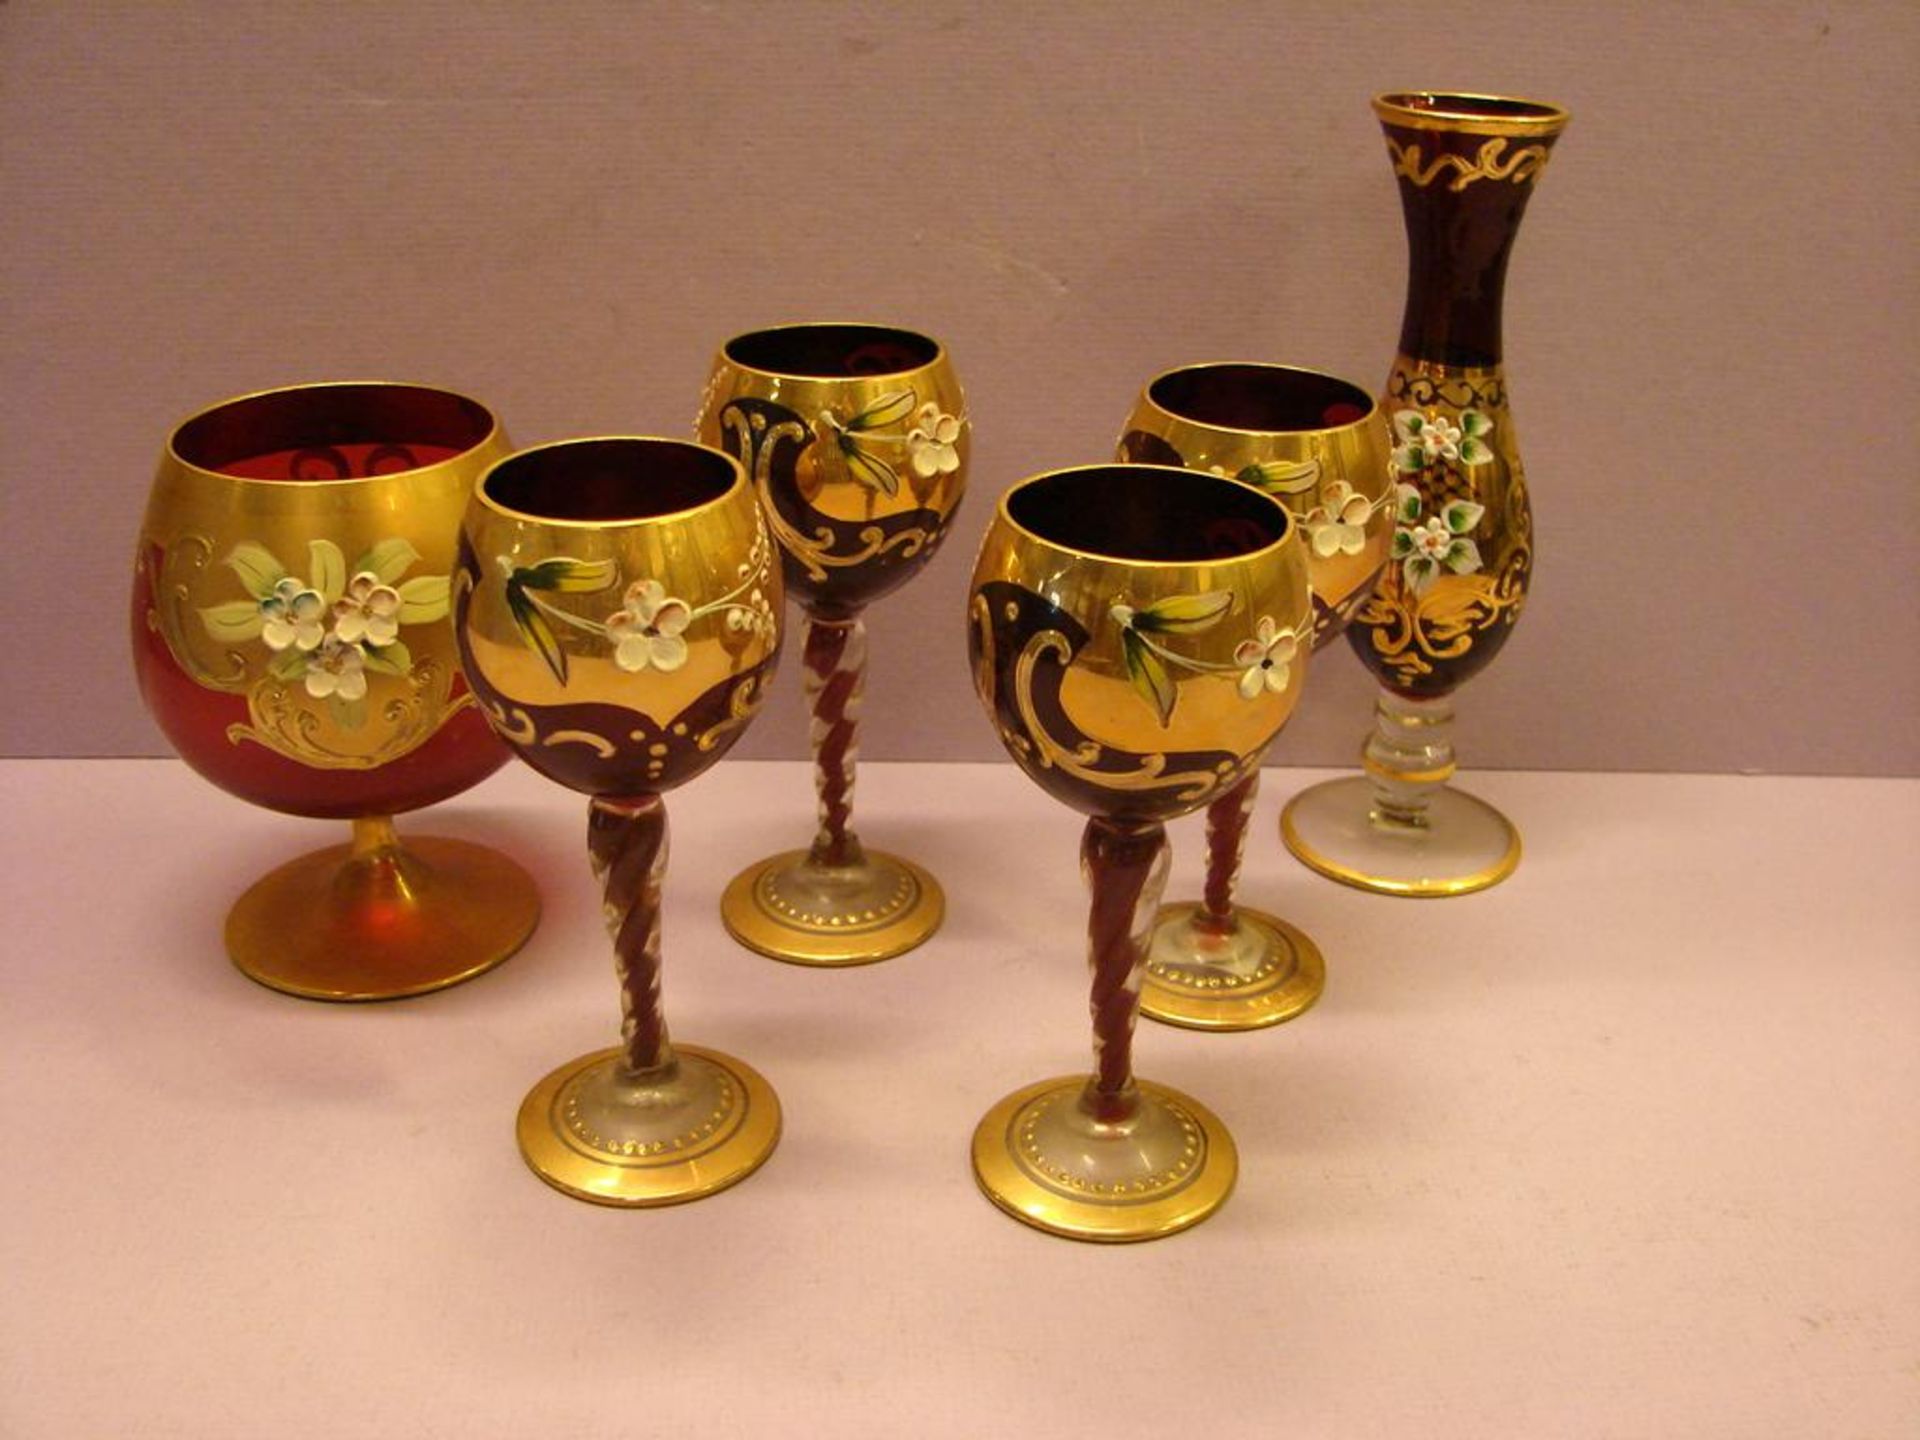 Konvolut von 6 farbigen Gläsern, Vase, etc., Gold/Blumen, ca. 12 - 17 cm- - -22.00 % buyer's premium